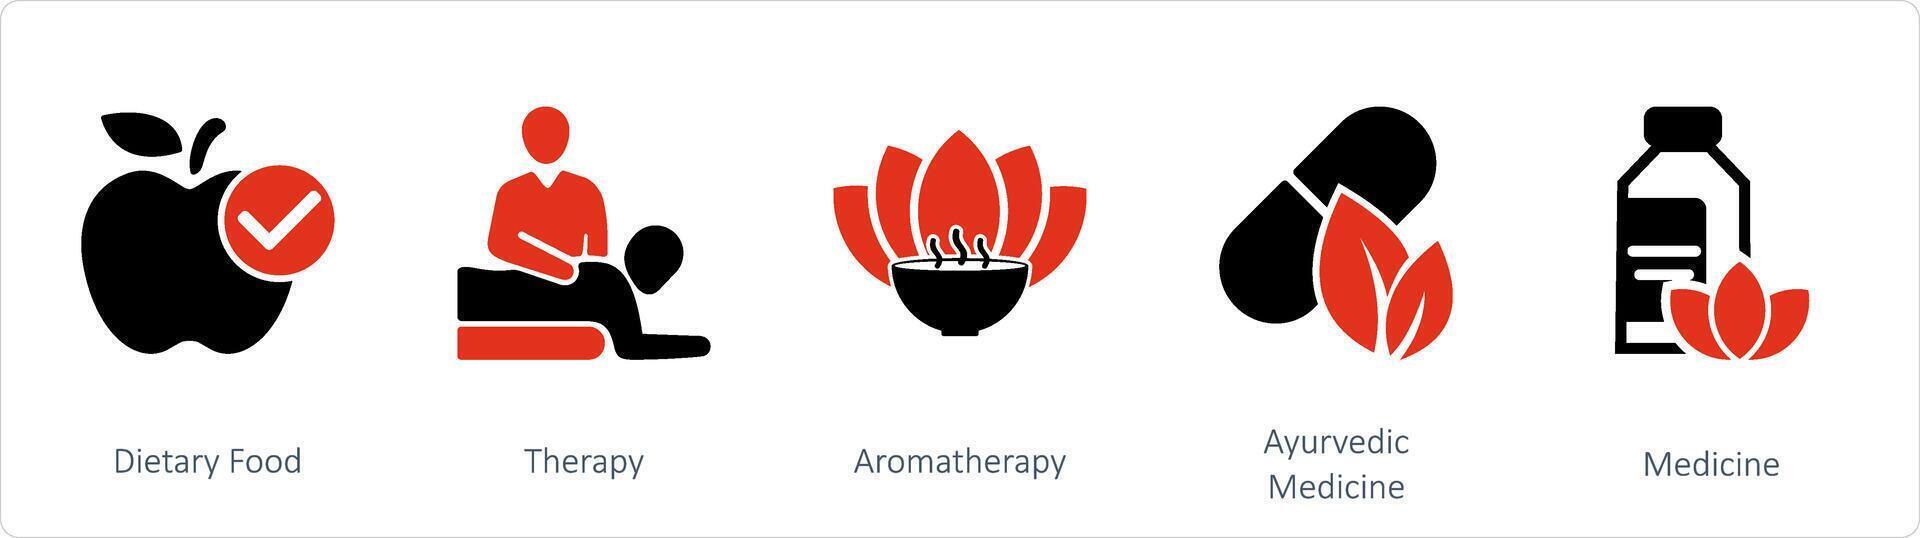 uma conjunto do 5 misturar ícones Como medicamento, ayurvédica medicamento, aromaterapia vetor